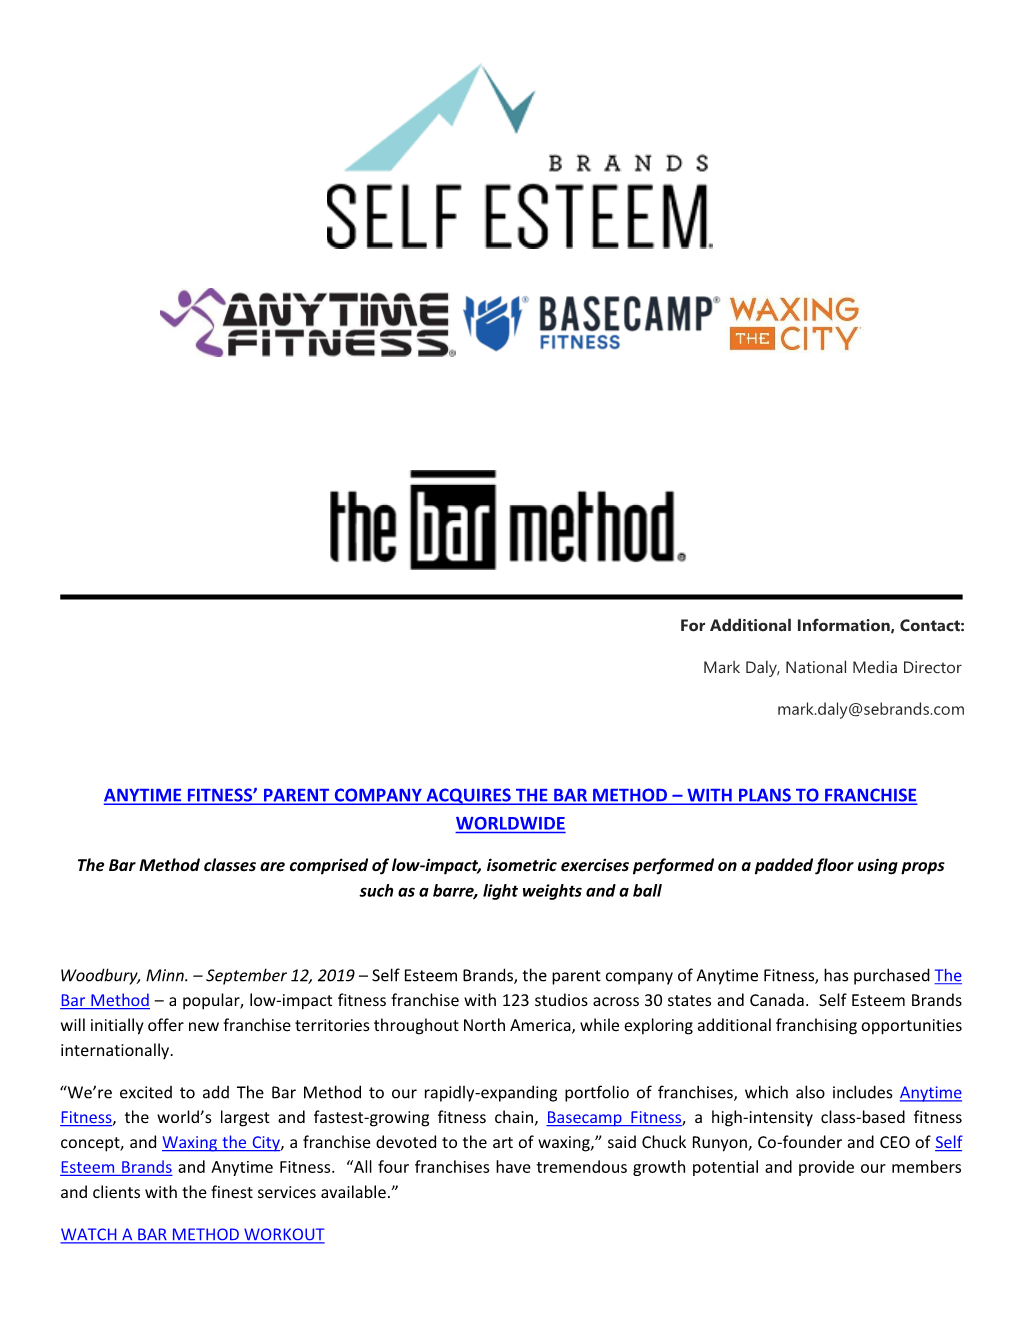 Self Esteem Brands Acquires the Bar Method